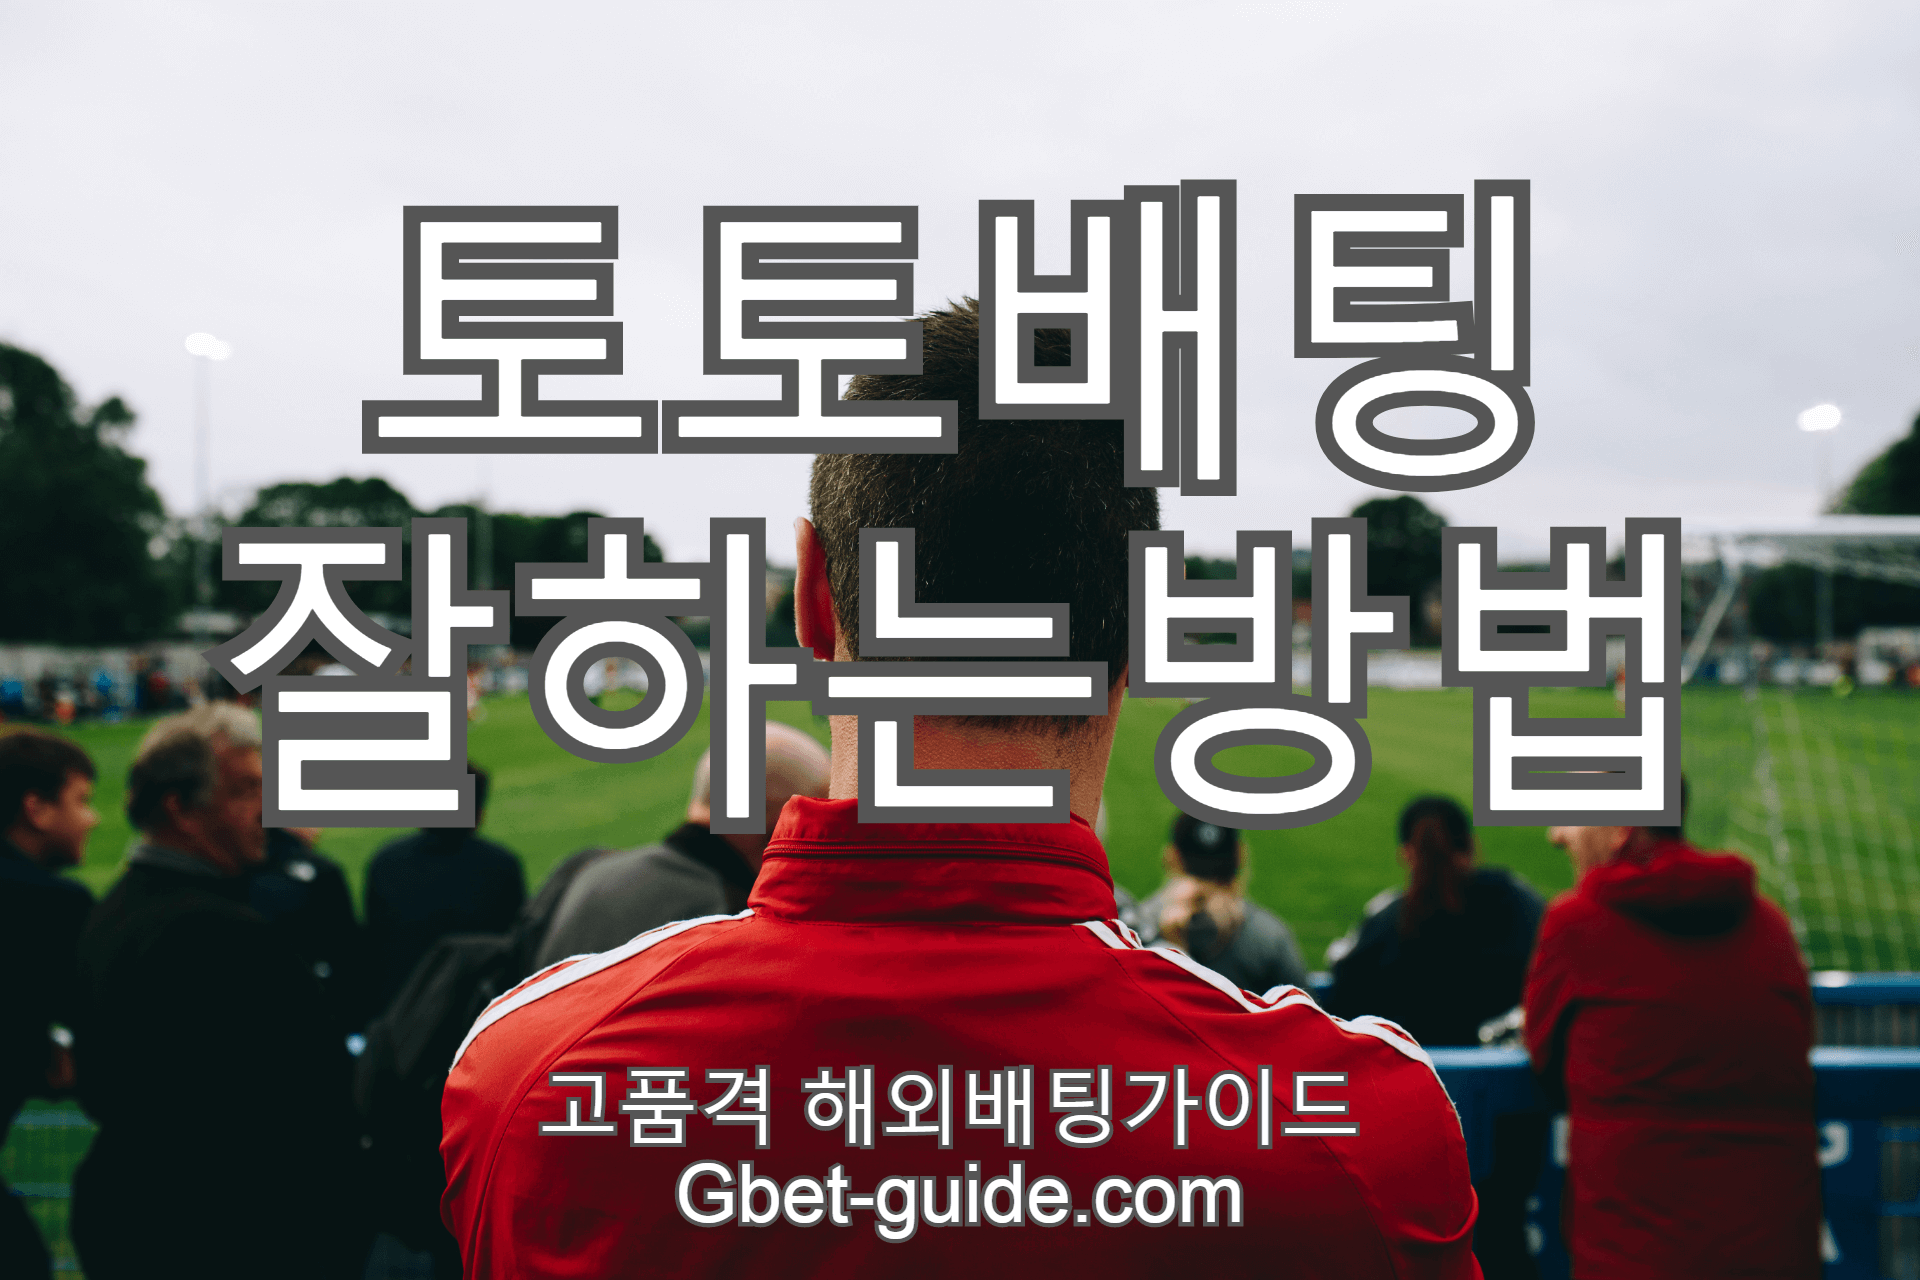 스포츠 토토 배팅 잘하는 방법 과 노하우 + Gbet-guide.com